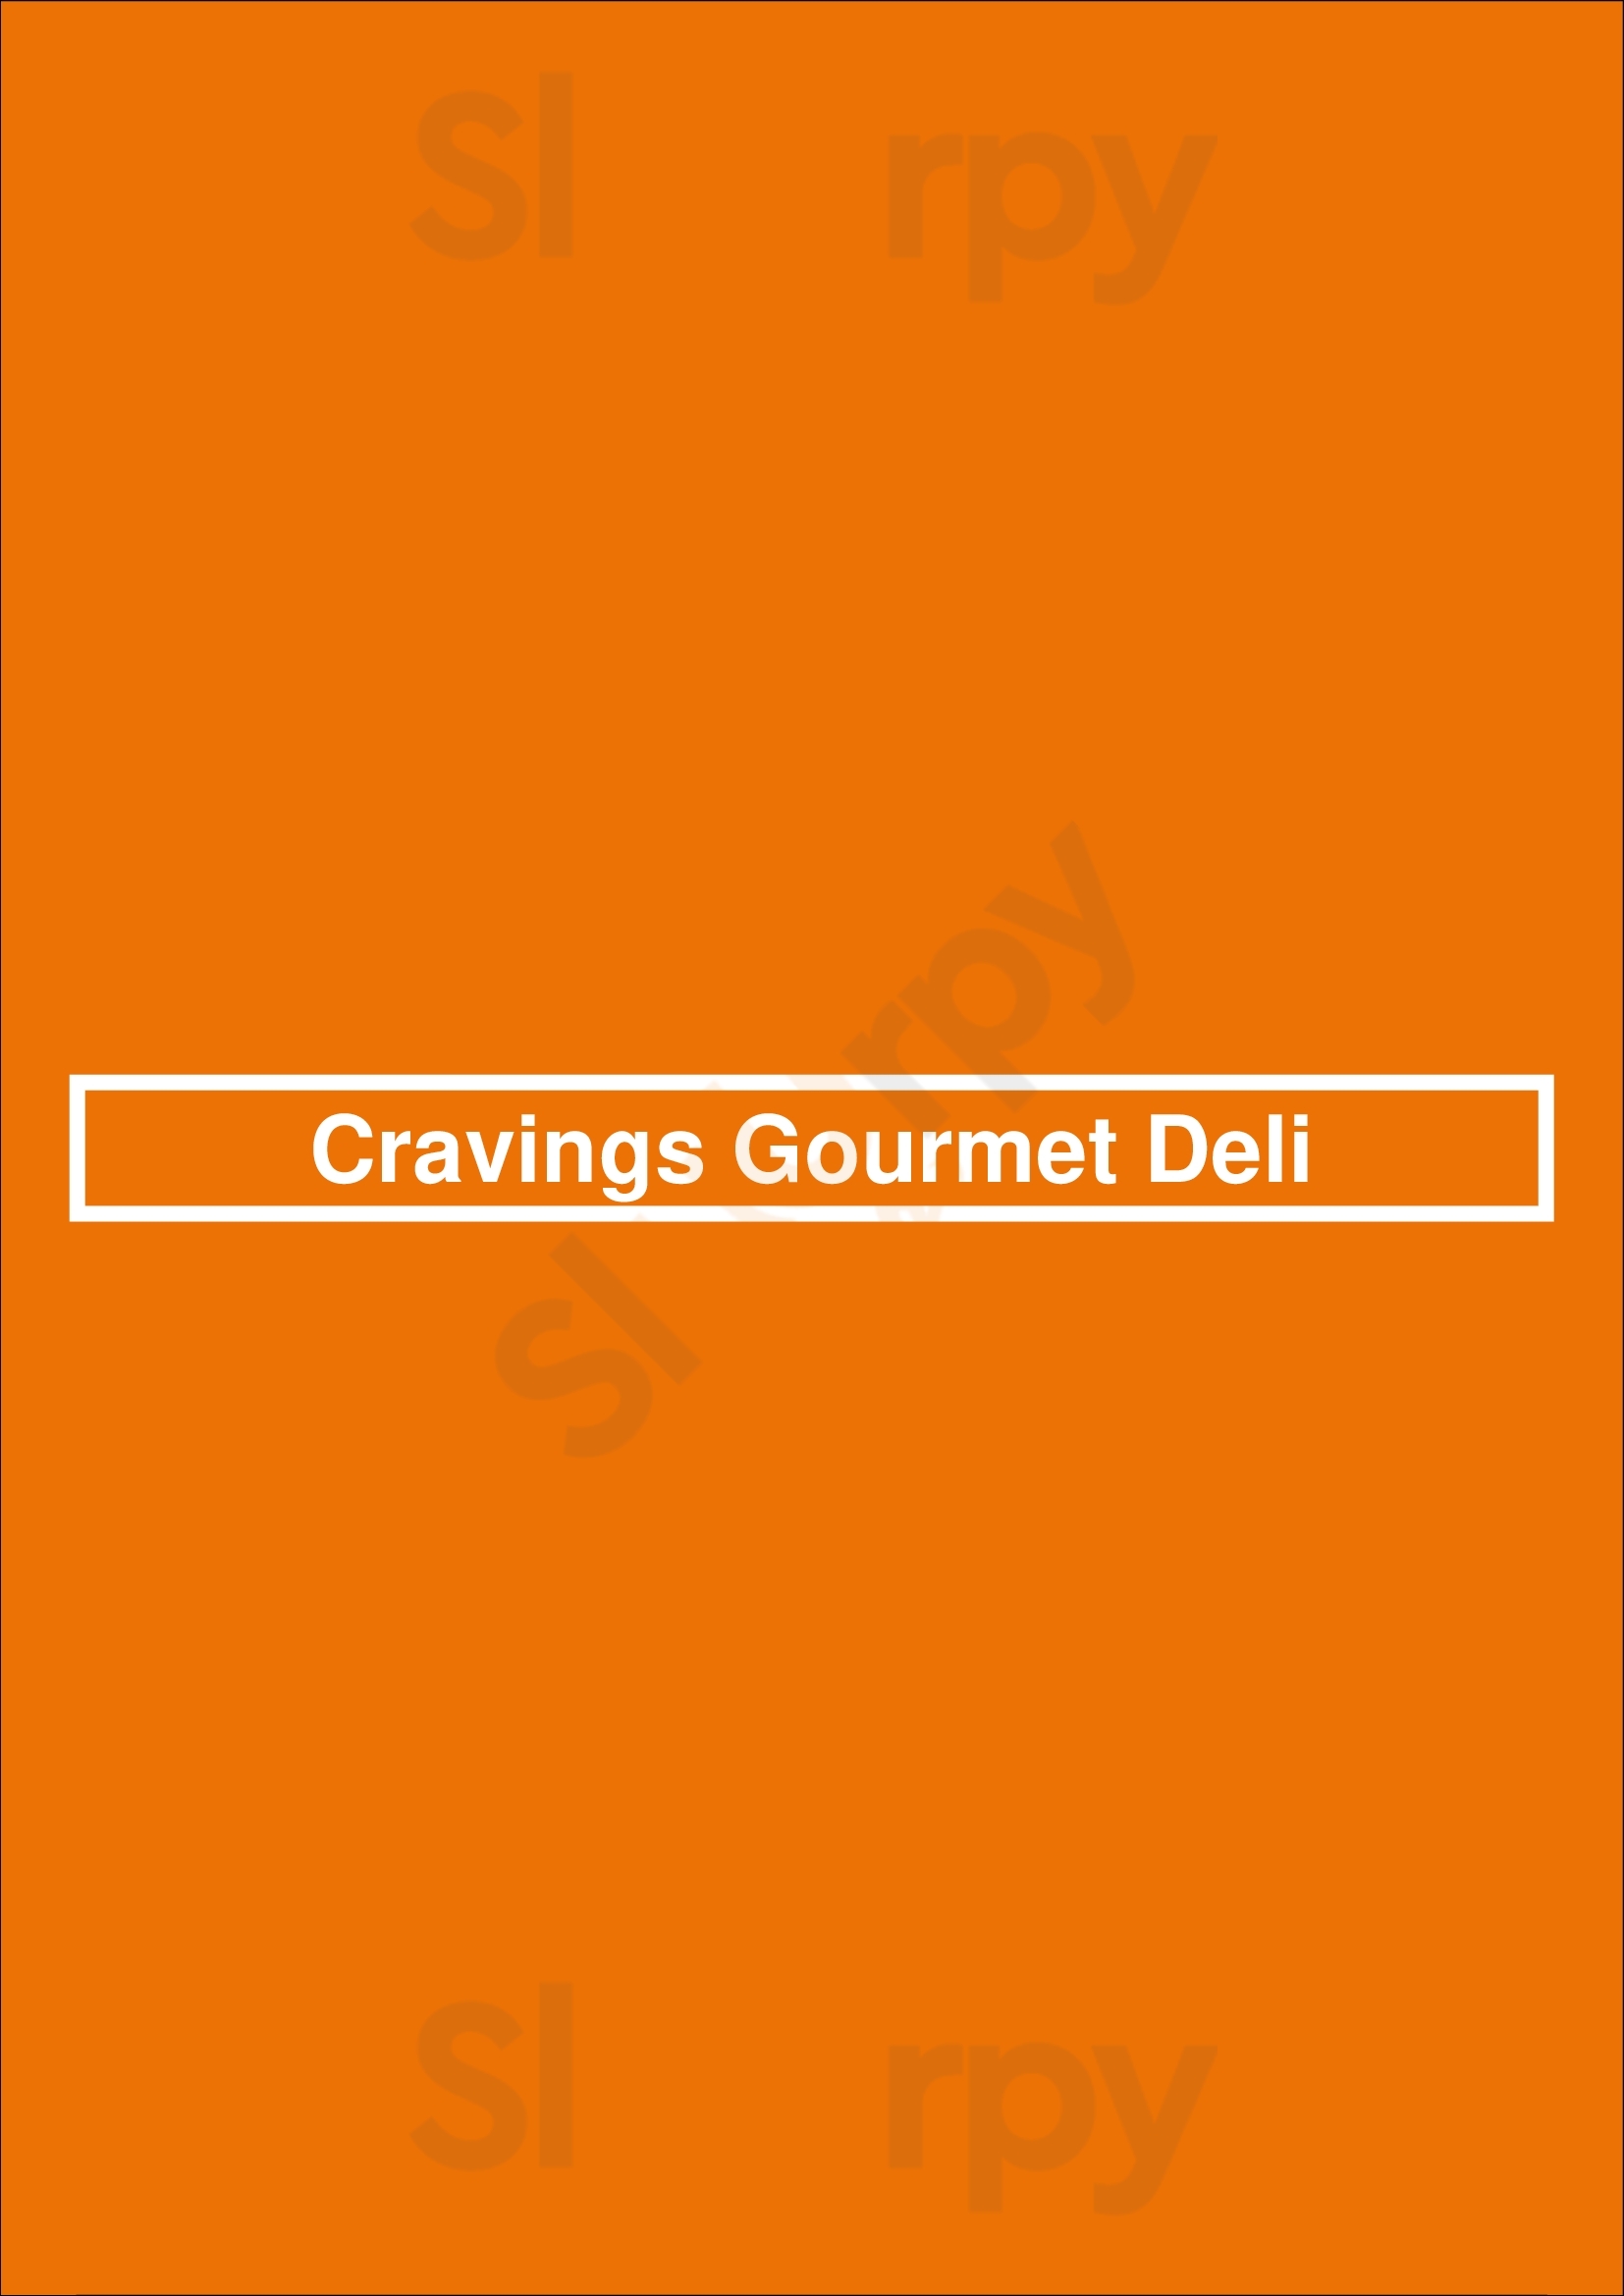 Cravings Gourmet Deli Lancaster Menu - 1